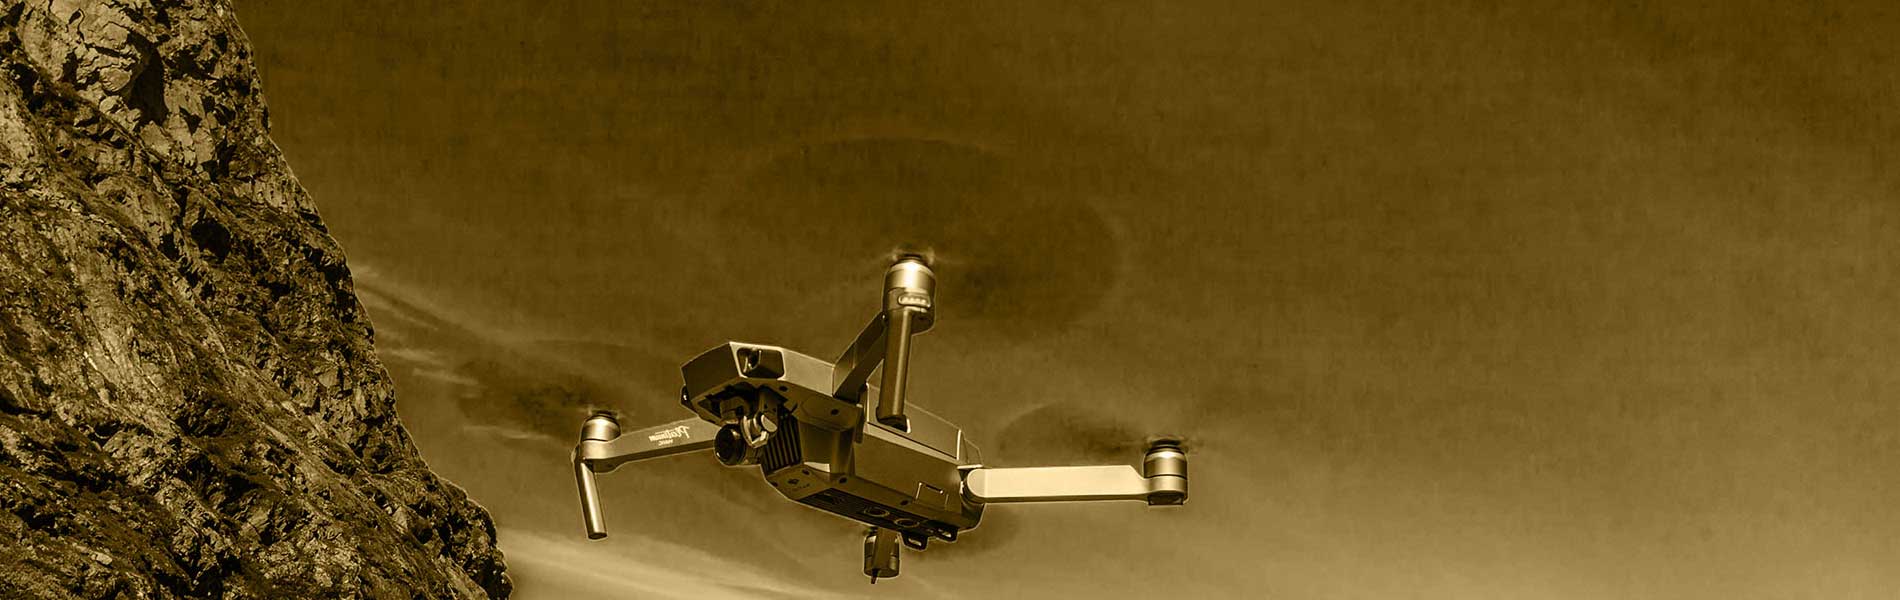 Photographe immobilier drone La Ciotat (13600)